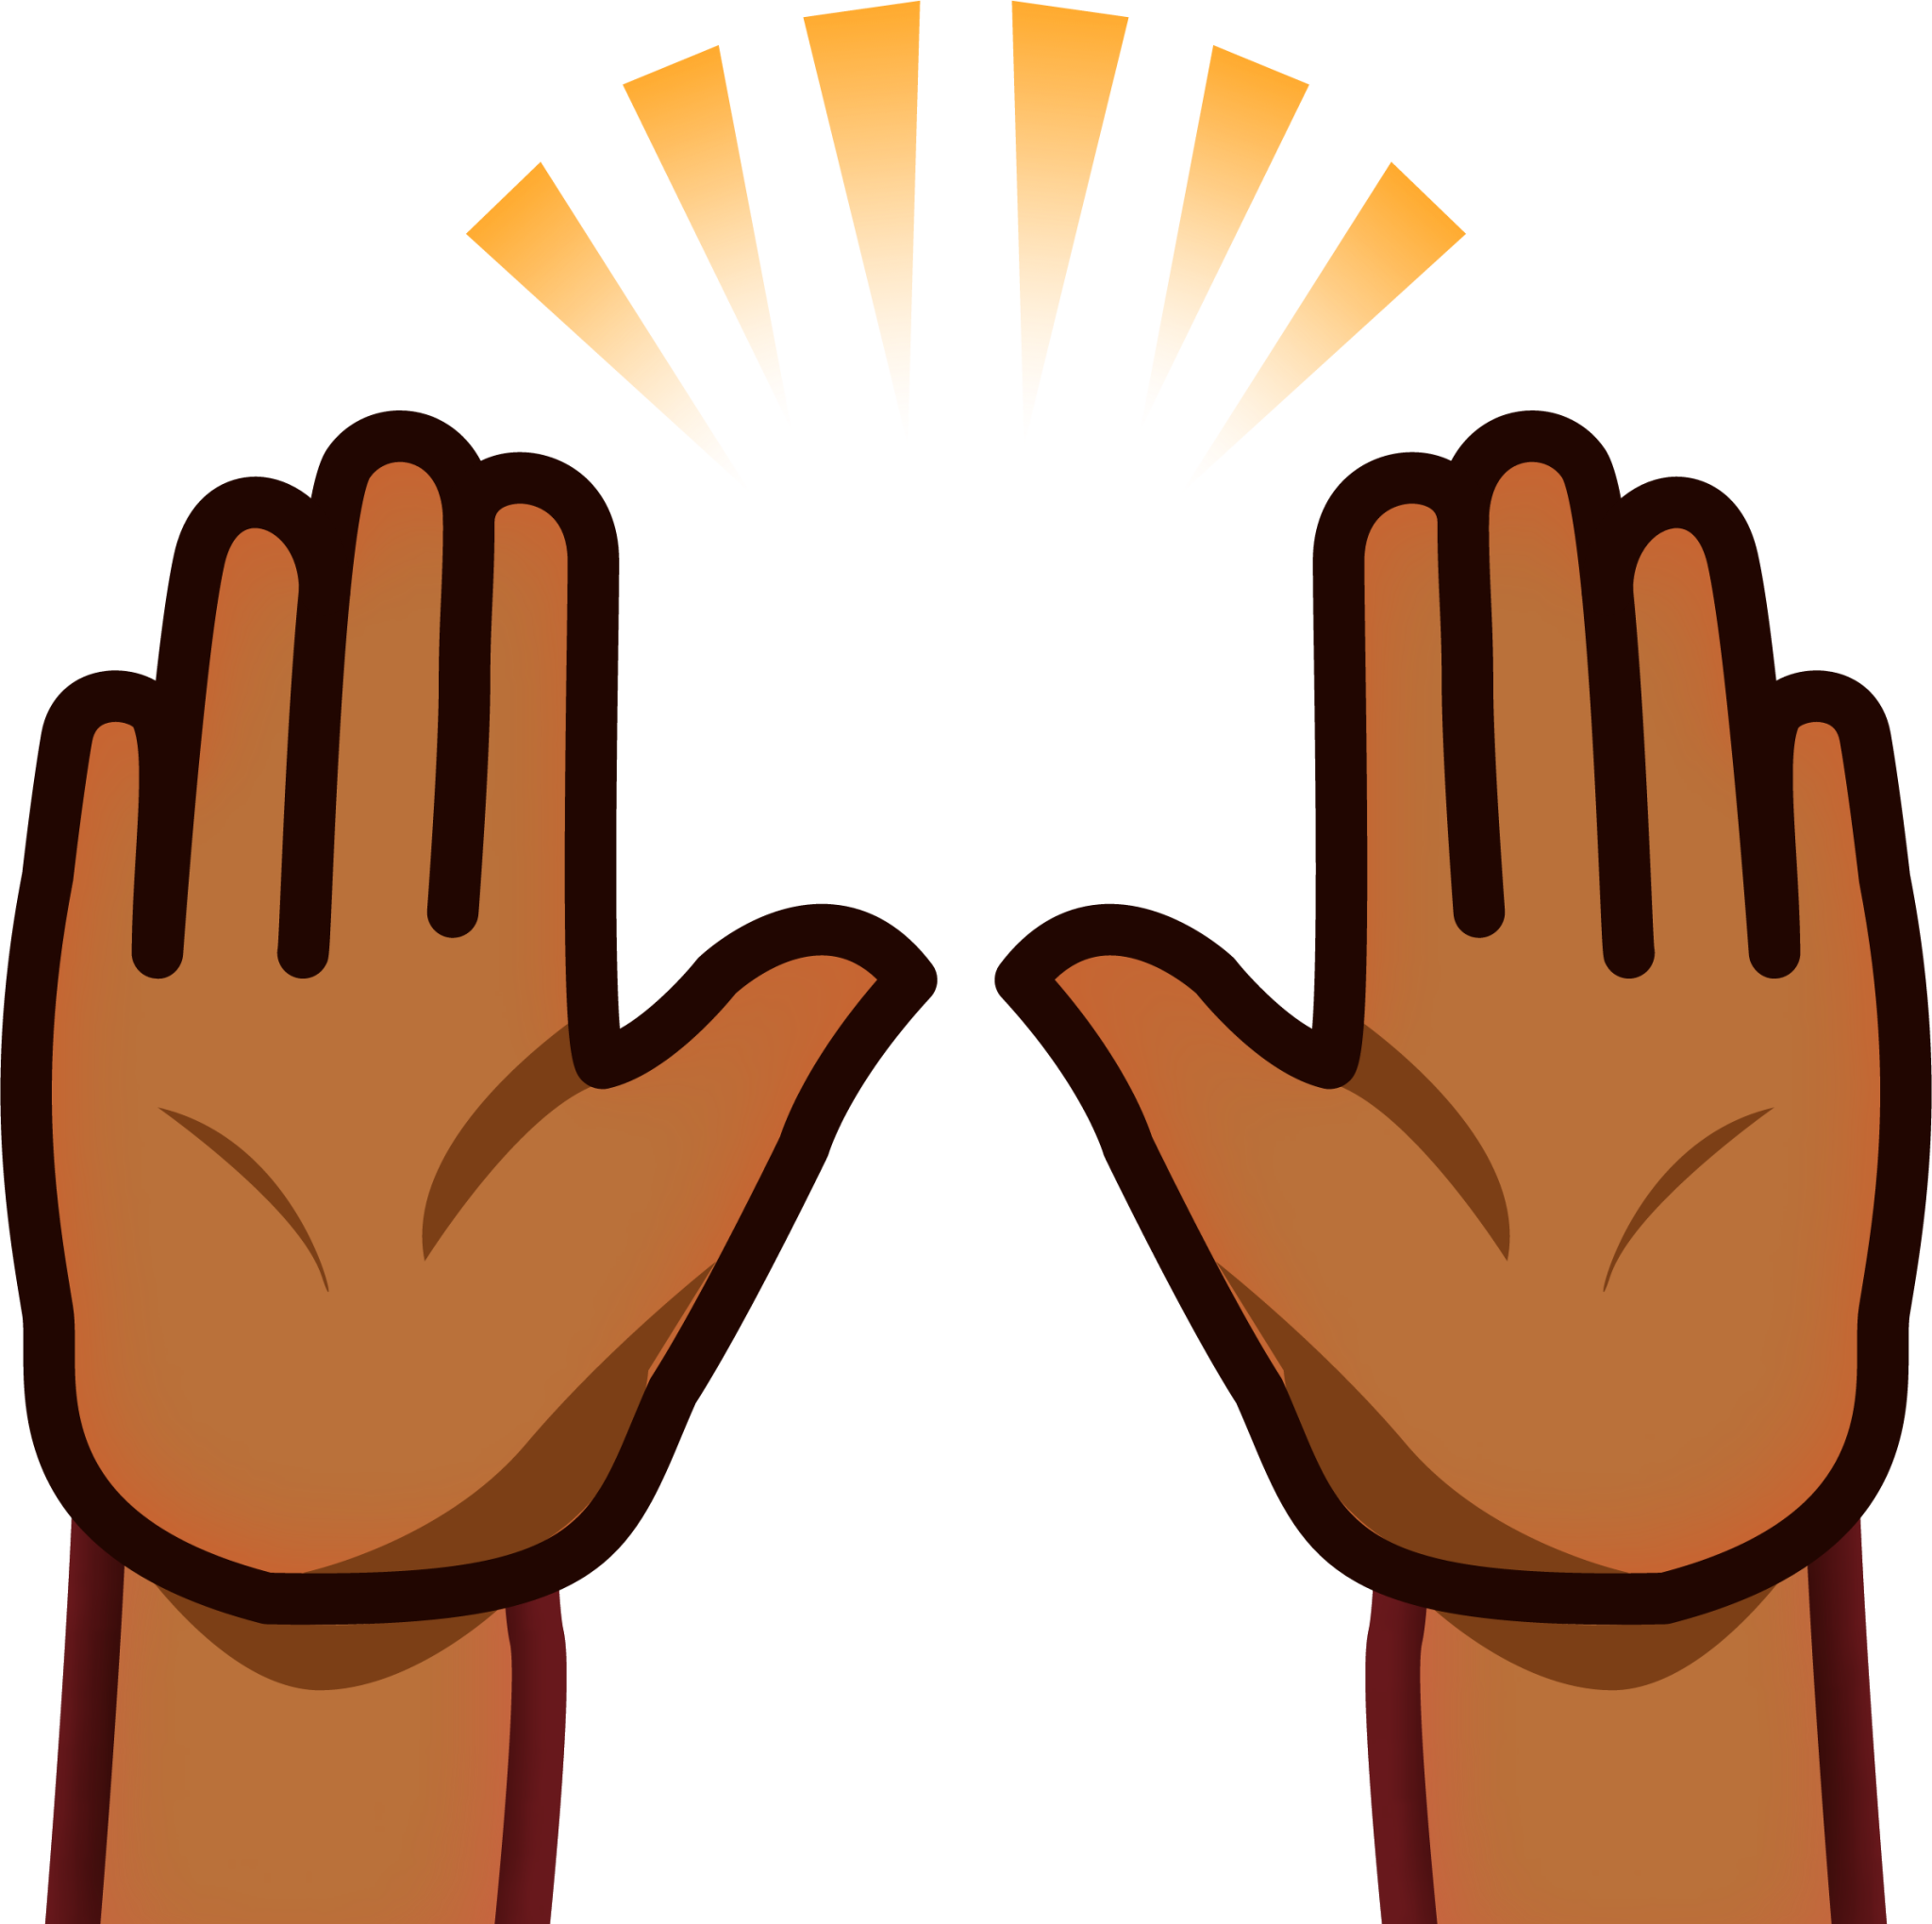 raised hands (brown) emoji